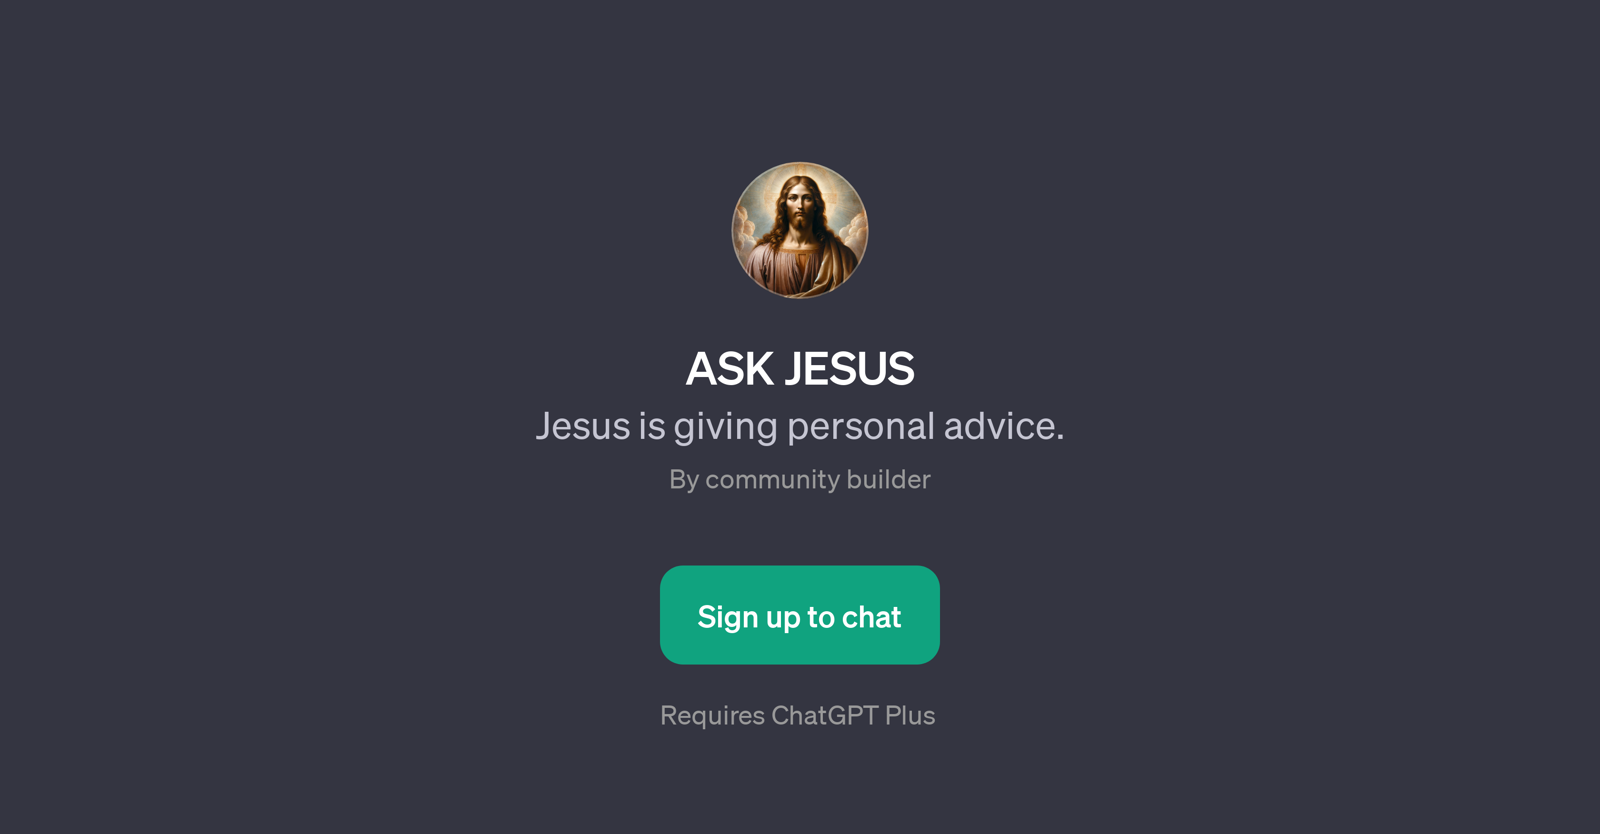 ASK JESUS website